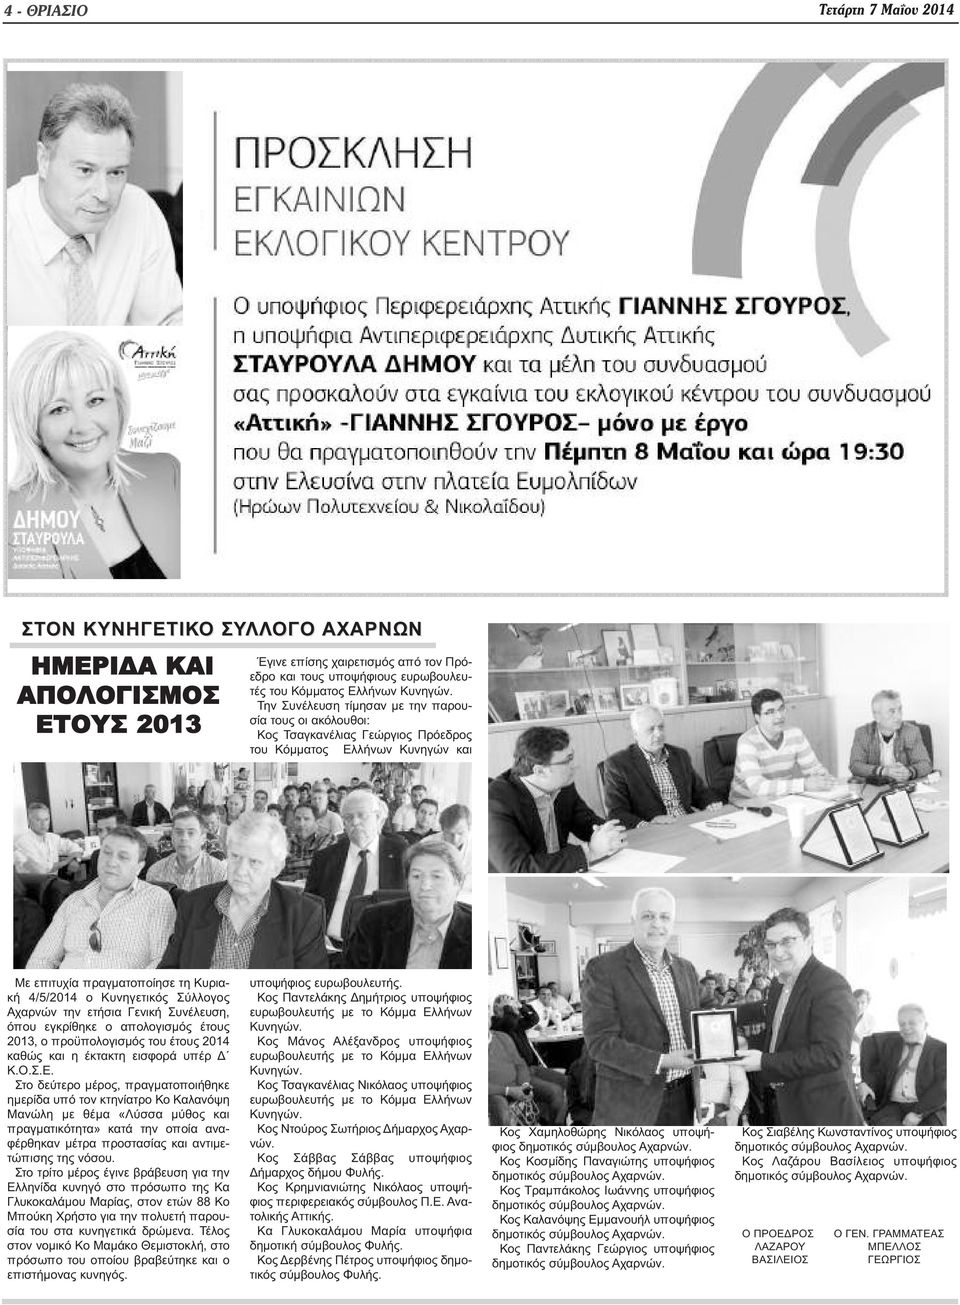 Την Συνέλευση τίμησαν με την παρουσία τους οι ακόλουθοι: Κος Τσαγκανέλιας Γεώργιος Πρόεδρος του Κόμματος Ελλήνων Κυνηγών και Με επιτυχία πραγματοποίησε τη Κυριακή 4/5/2014 ο Κυνηγετικός Σύλλογος